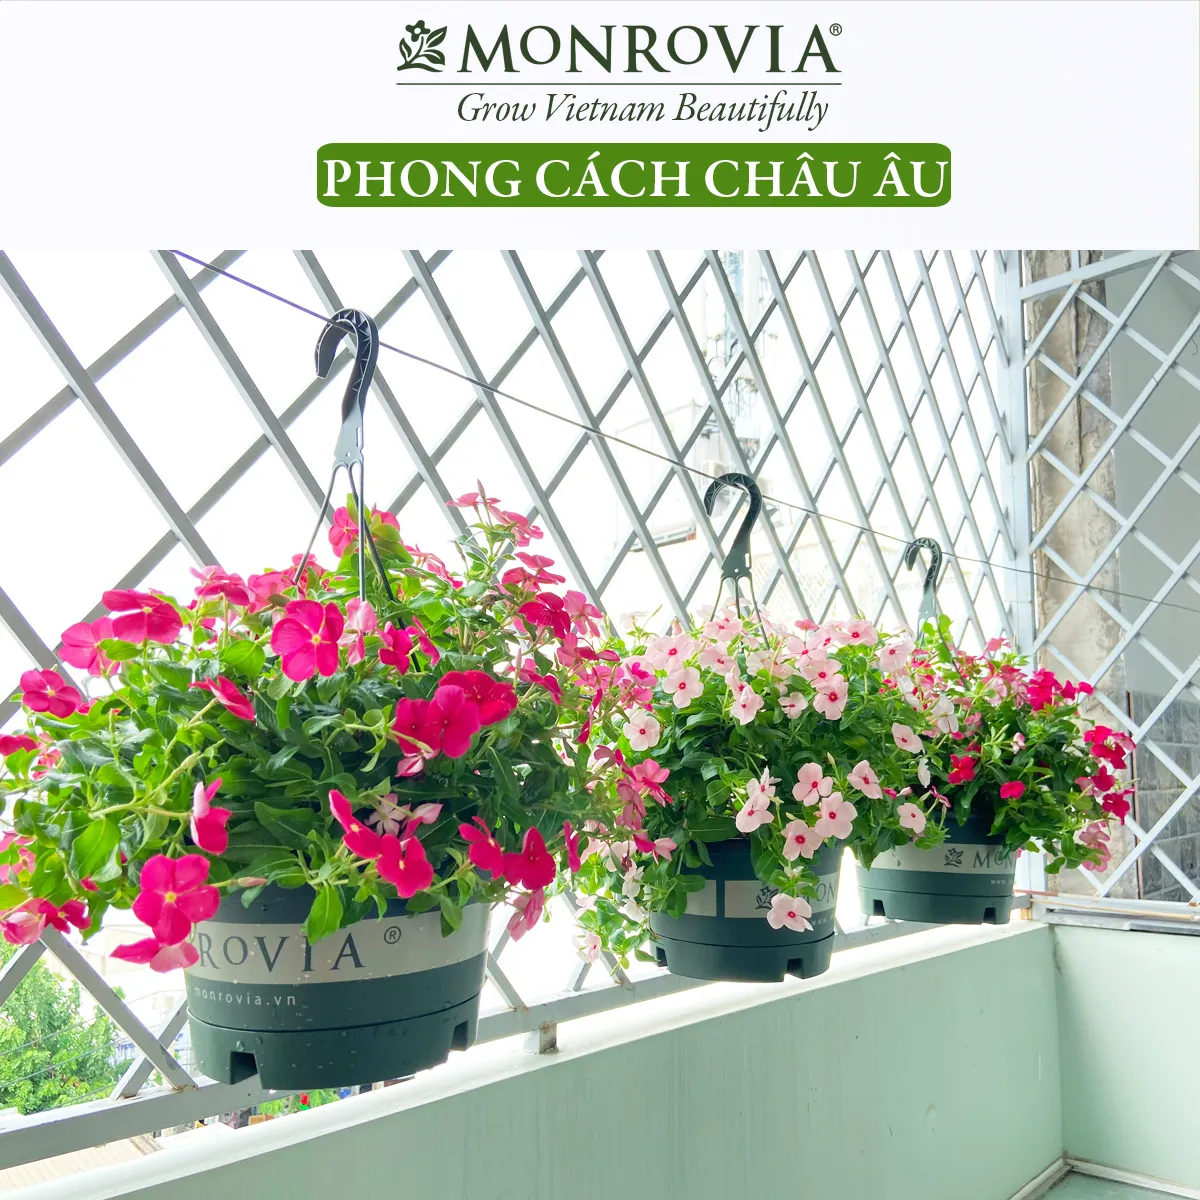 Chậu treo hoa Monrovia là lựa chọn tuyệt vời để thêm màu sắc và sự sống động cho không gian sống của bạn. Với những loại hoa đa dạng và đầy màu sắc, bạn sẽ không thể rời mắt khỏi chúng.